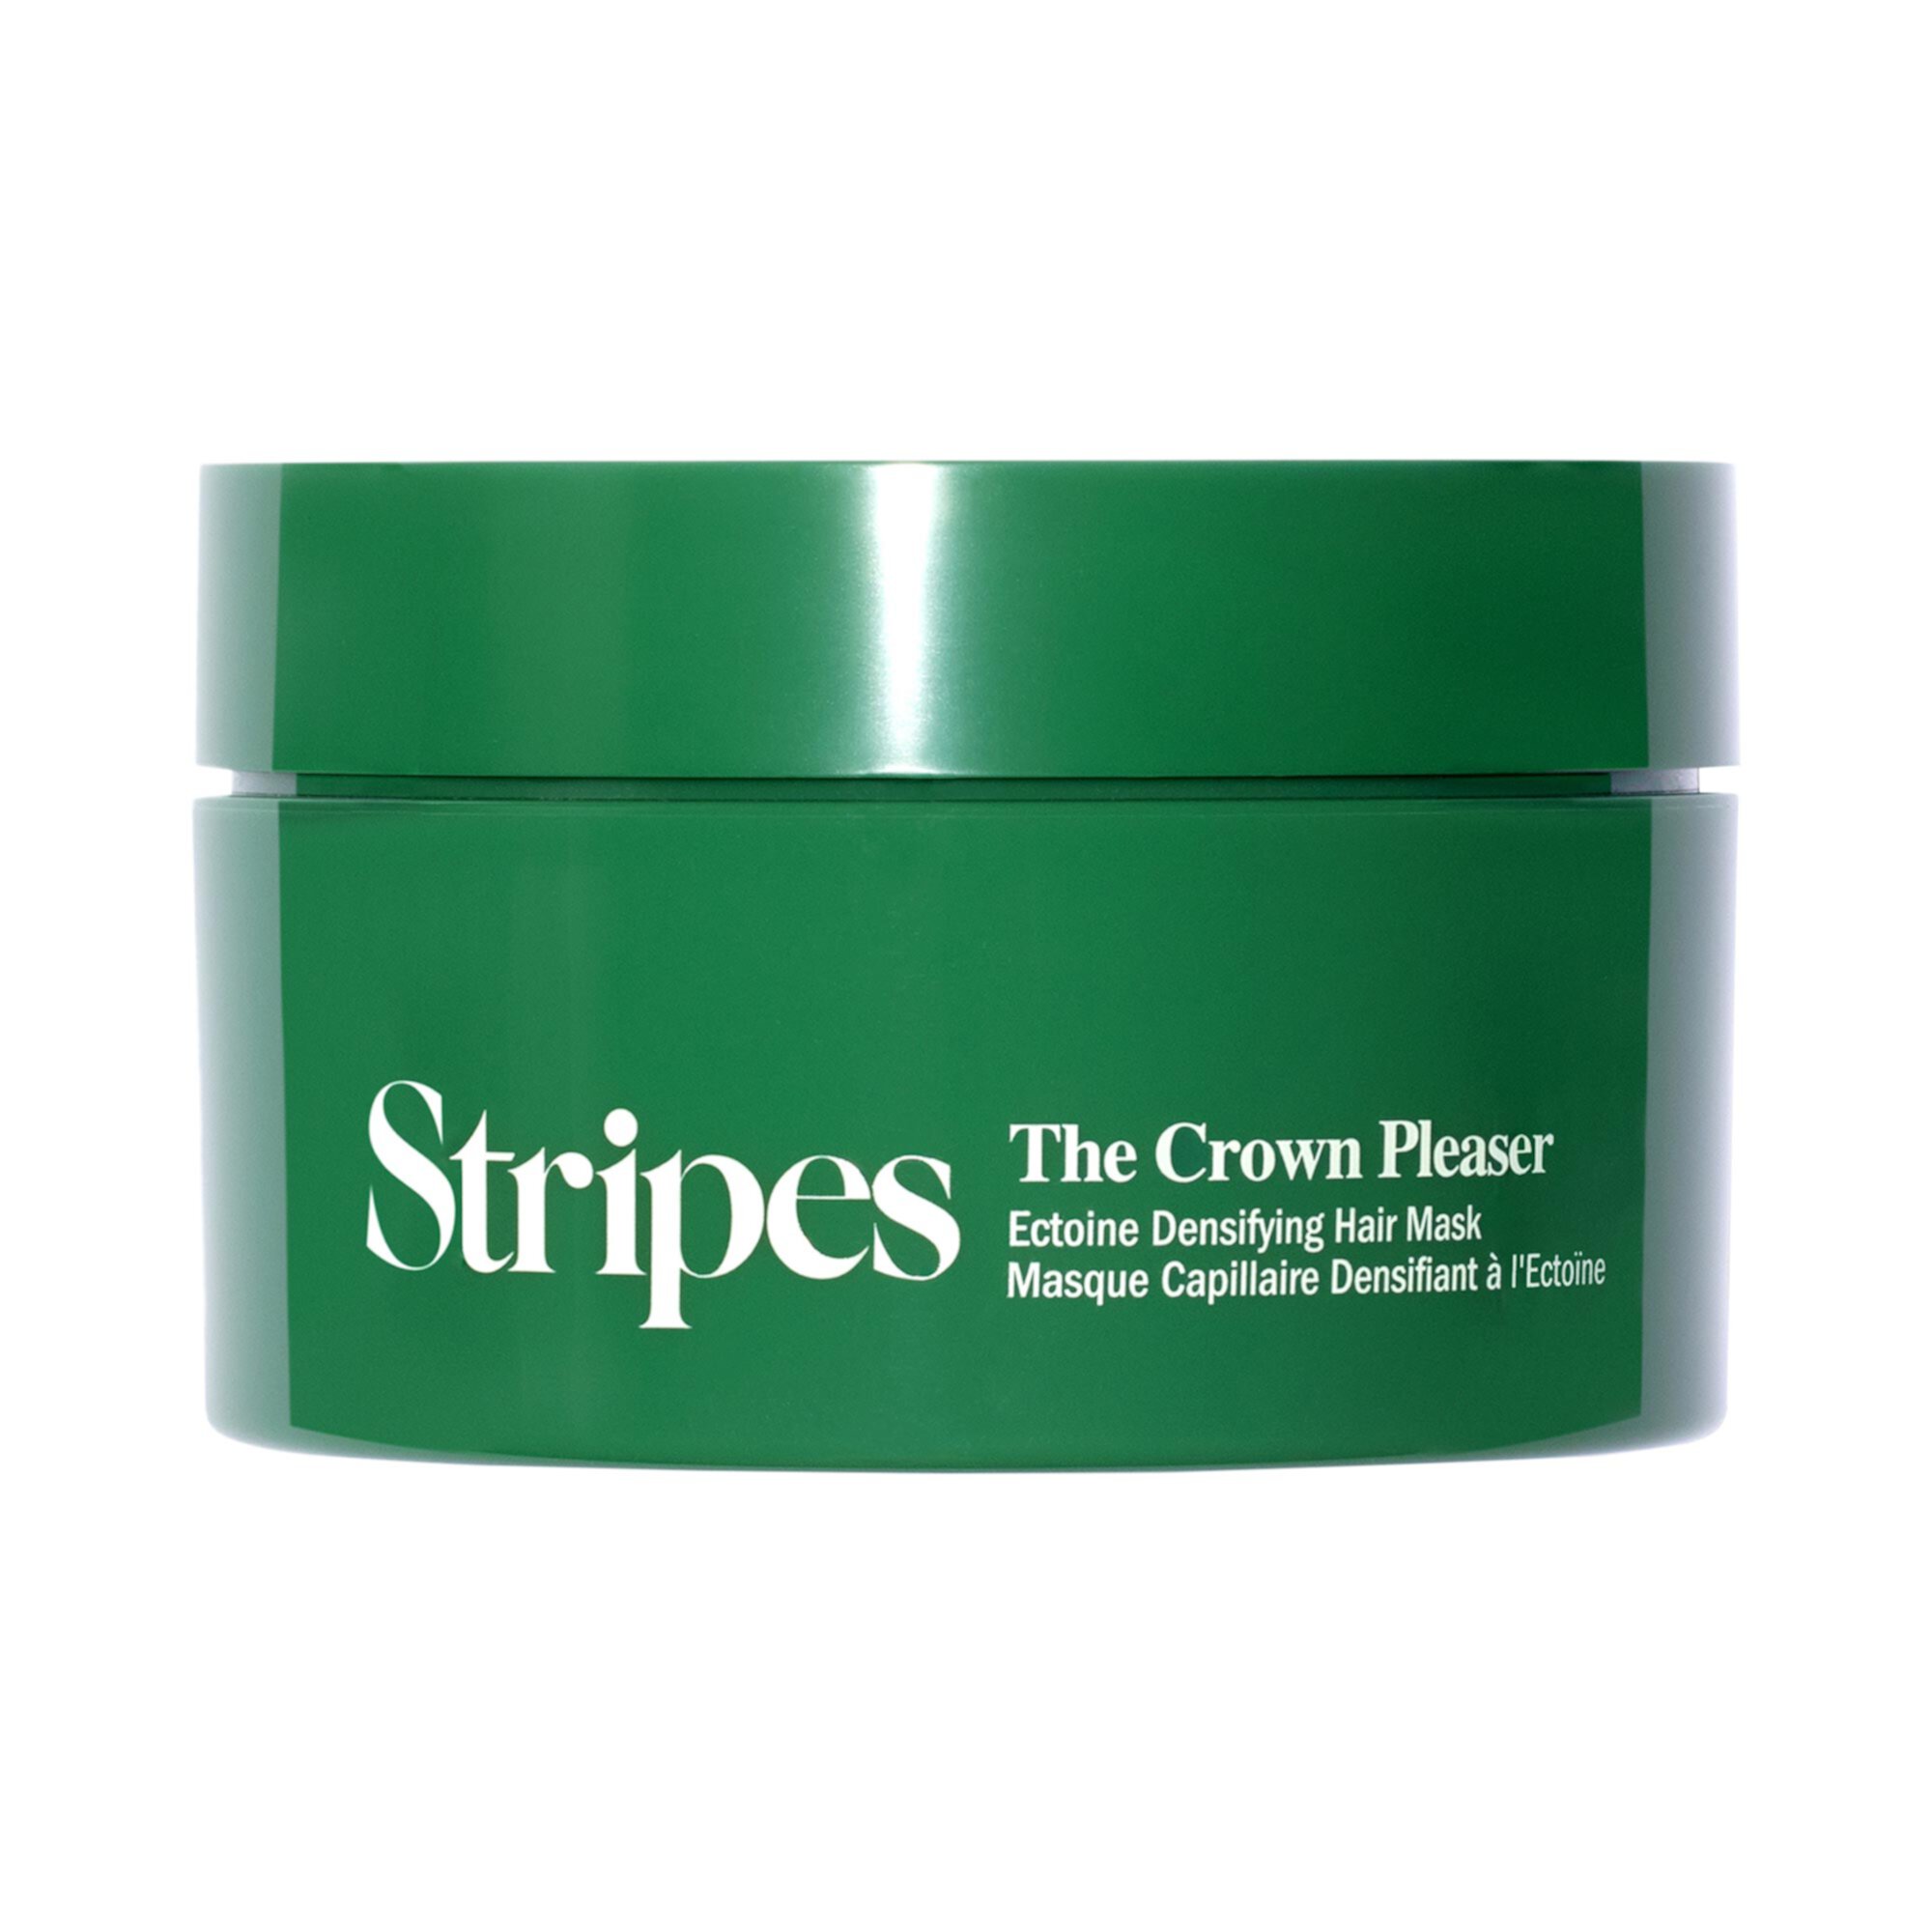 Crown Pleaser Утолщающая и увлажняющая маска для истонченных волос Stripes